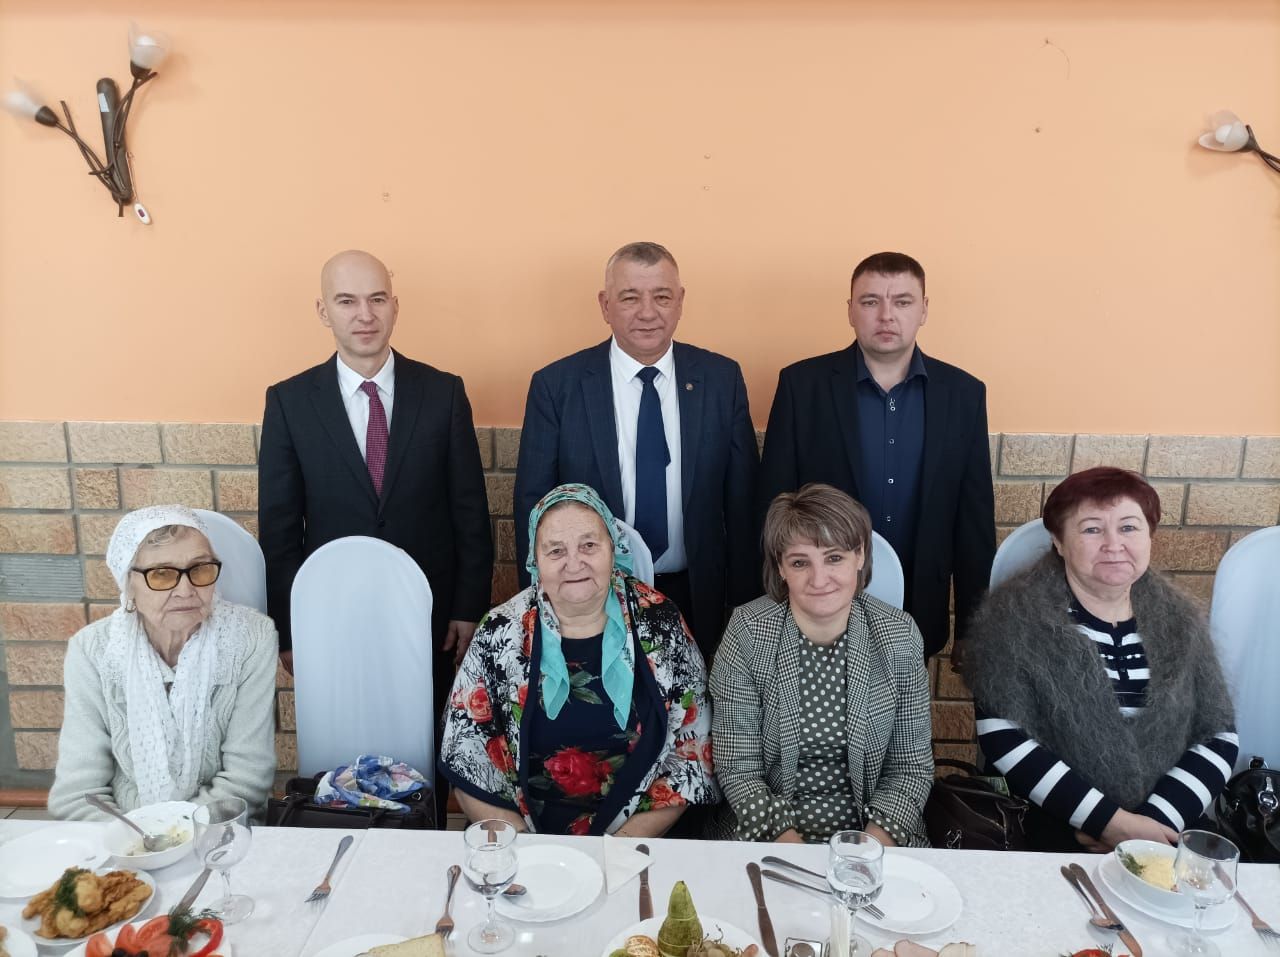 В Болгаре провели праздничное мероприятие для людей с ограниченными возможностями здоровья